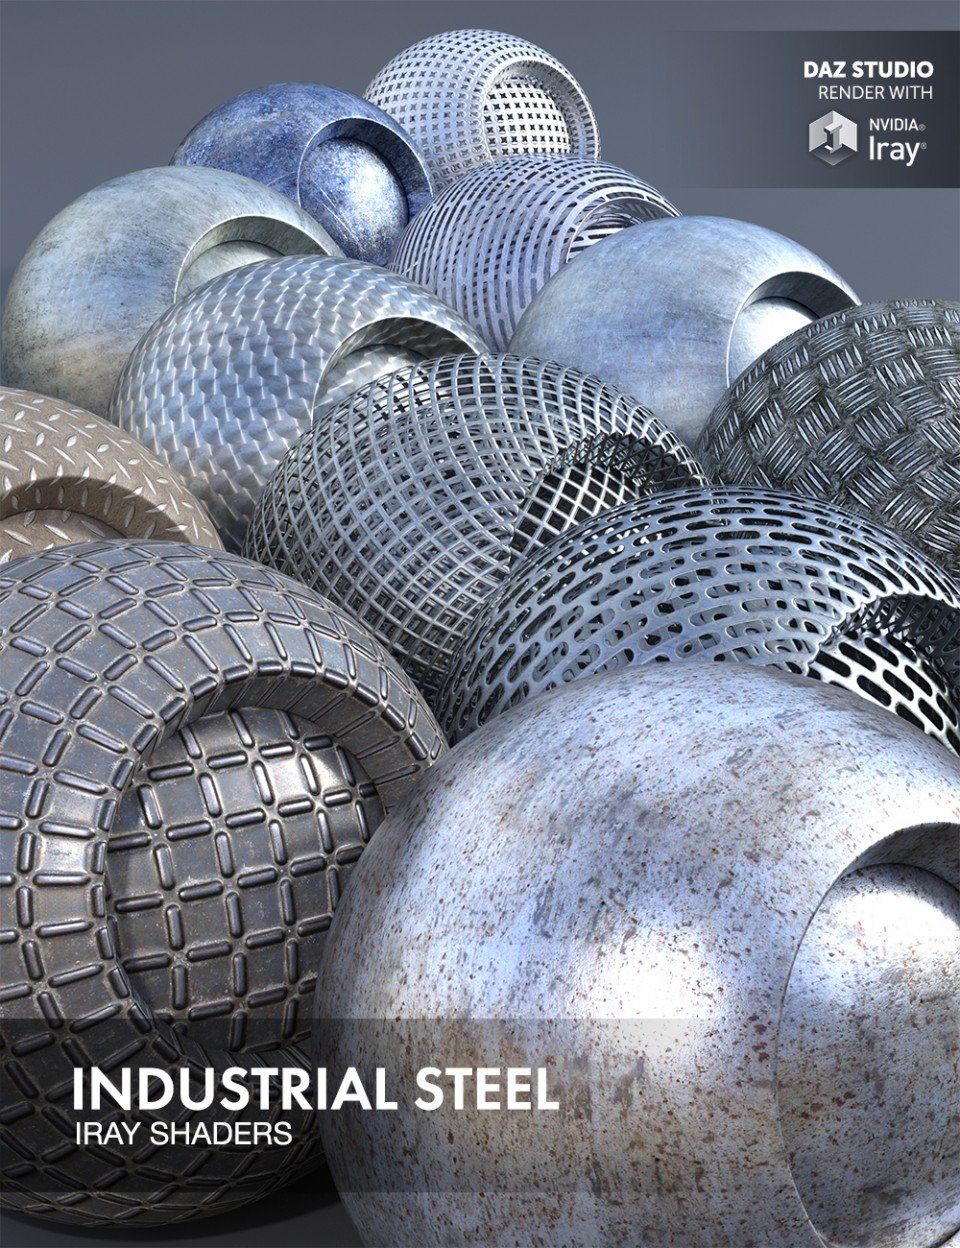 Industrial Steel – Iray Shaders_DAZ3DDL